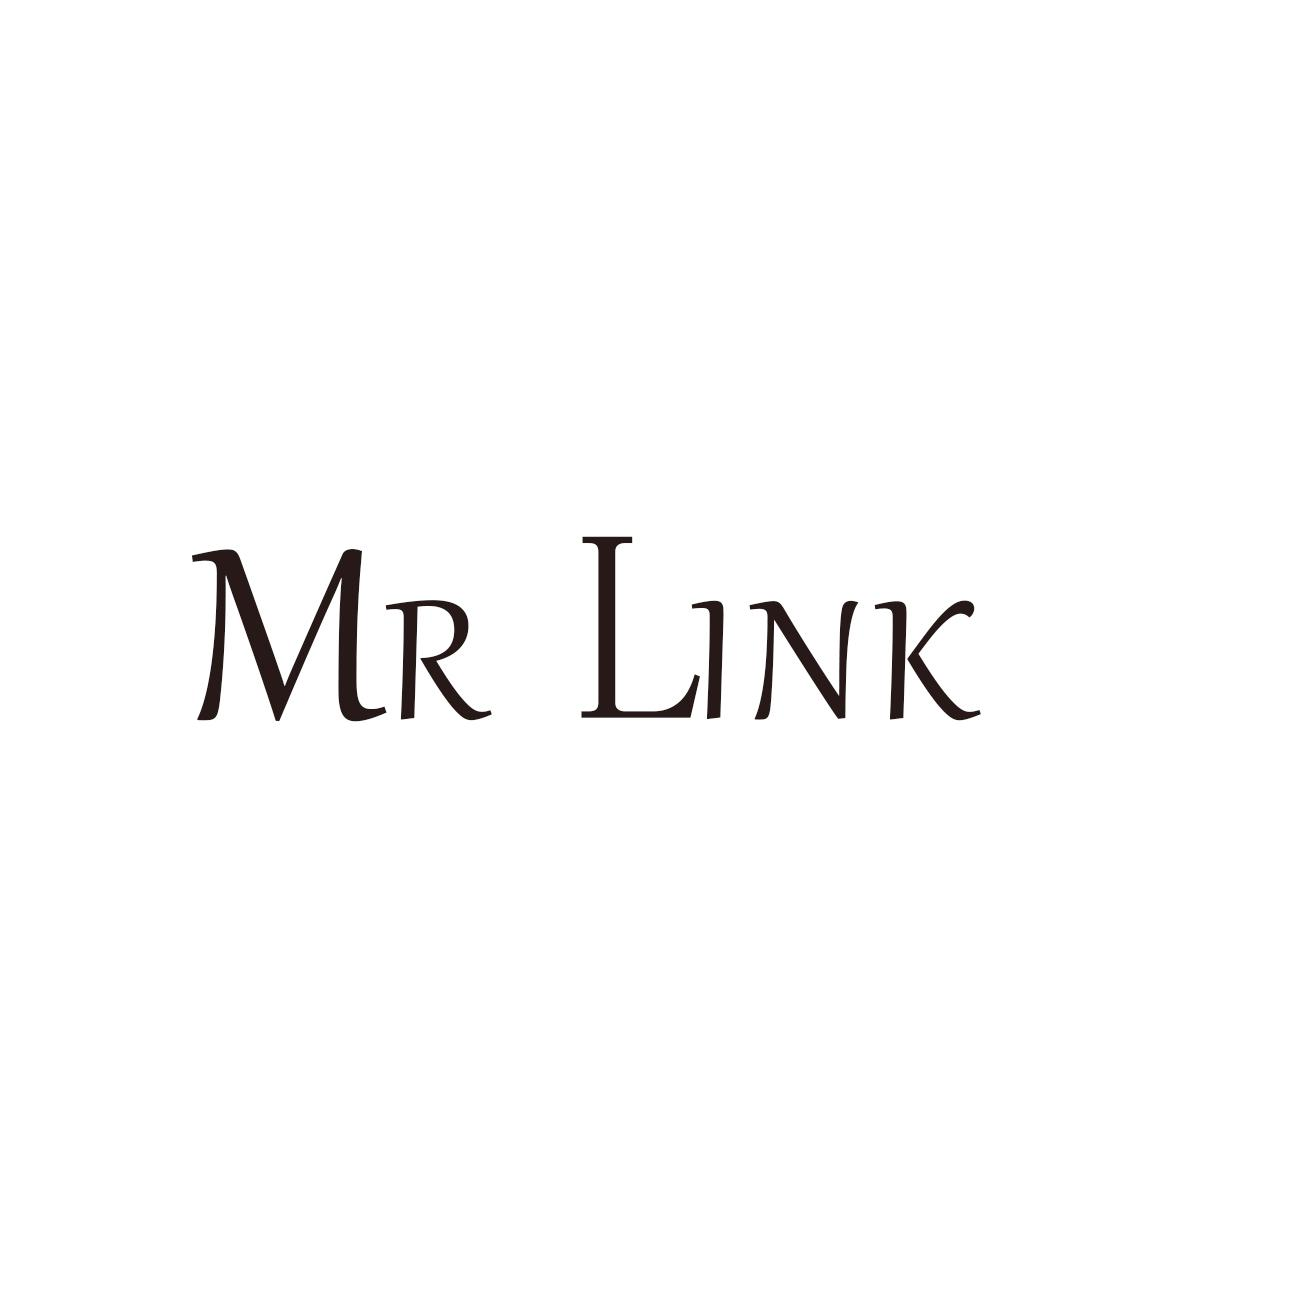 MR LINK